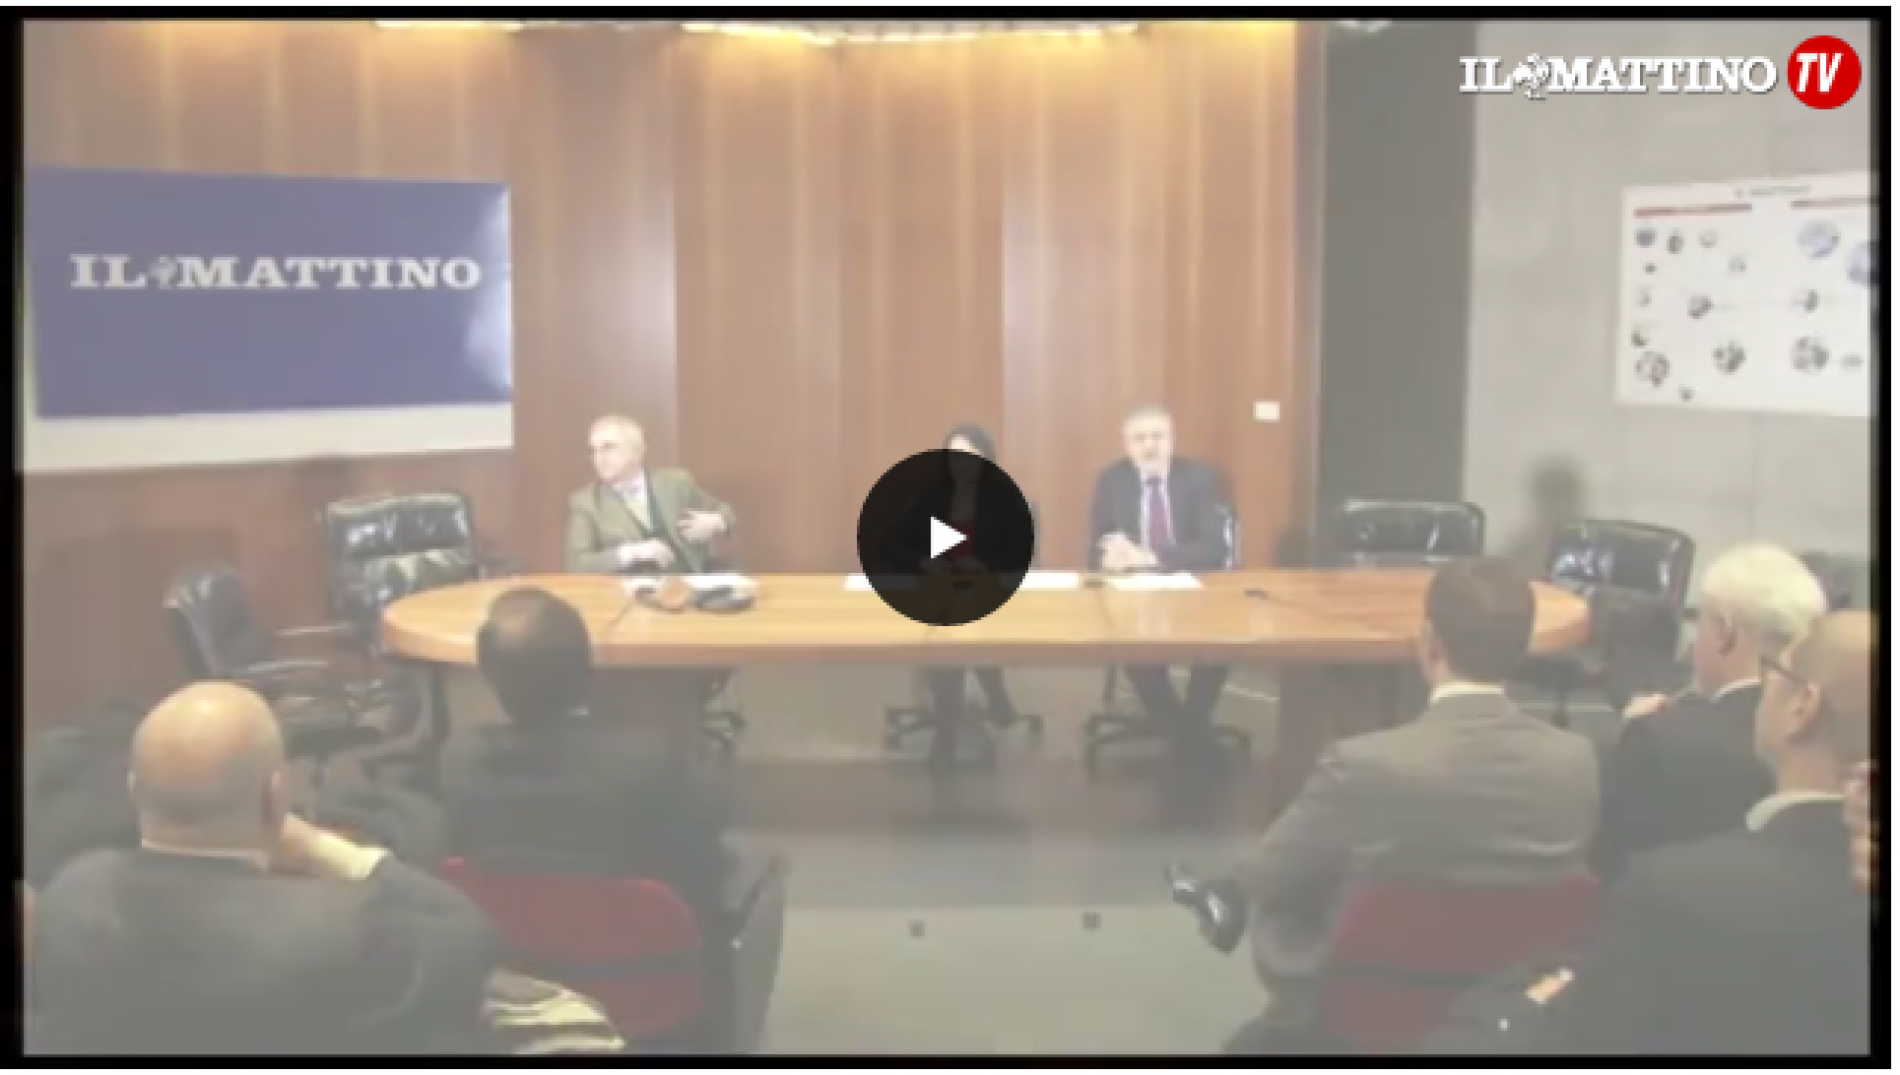 [video] Lavoro, forum ‘Il Mattino’ con l’assessore Palmeri: tema occupazione è punto focale nostra regione